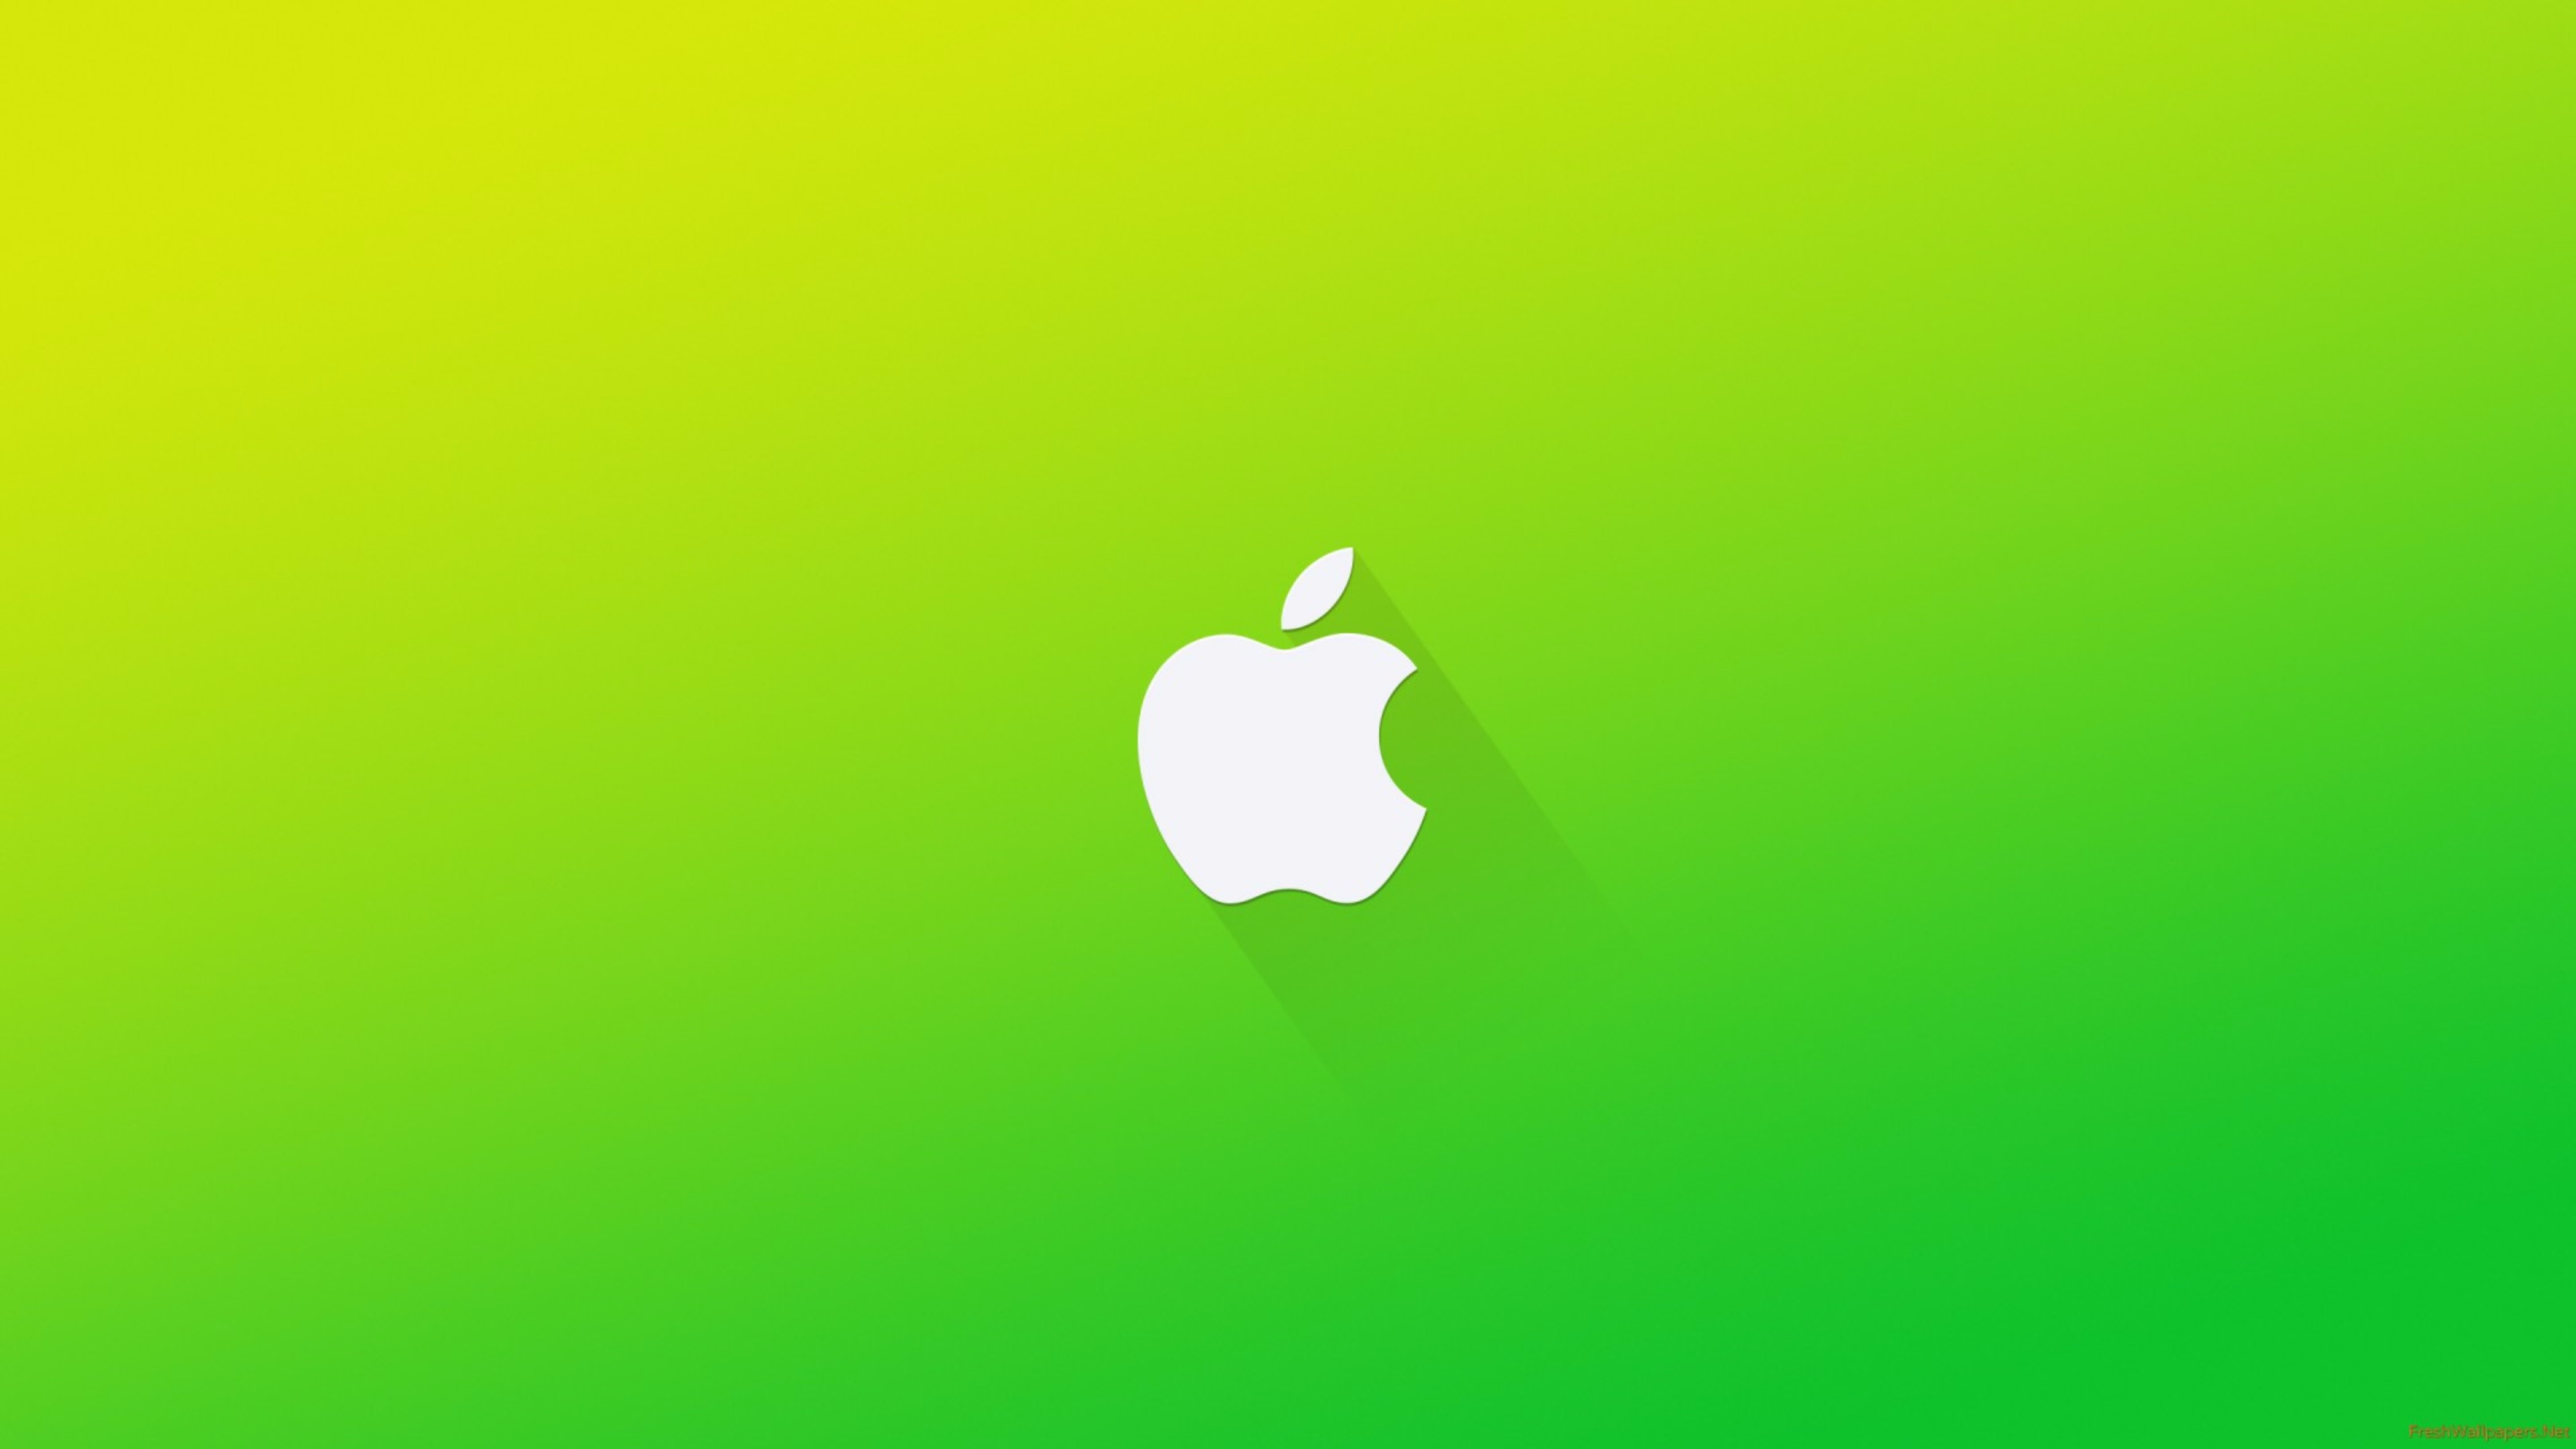 Apple 4k - Apple Logo Wallpaper 4k , HD Wallpaper & Backgrounds